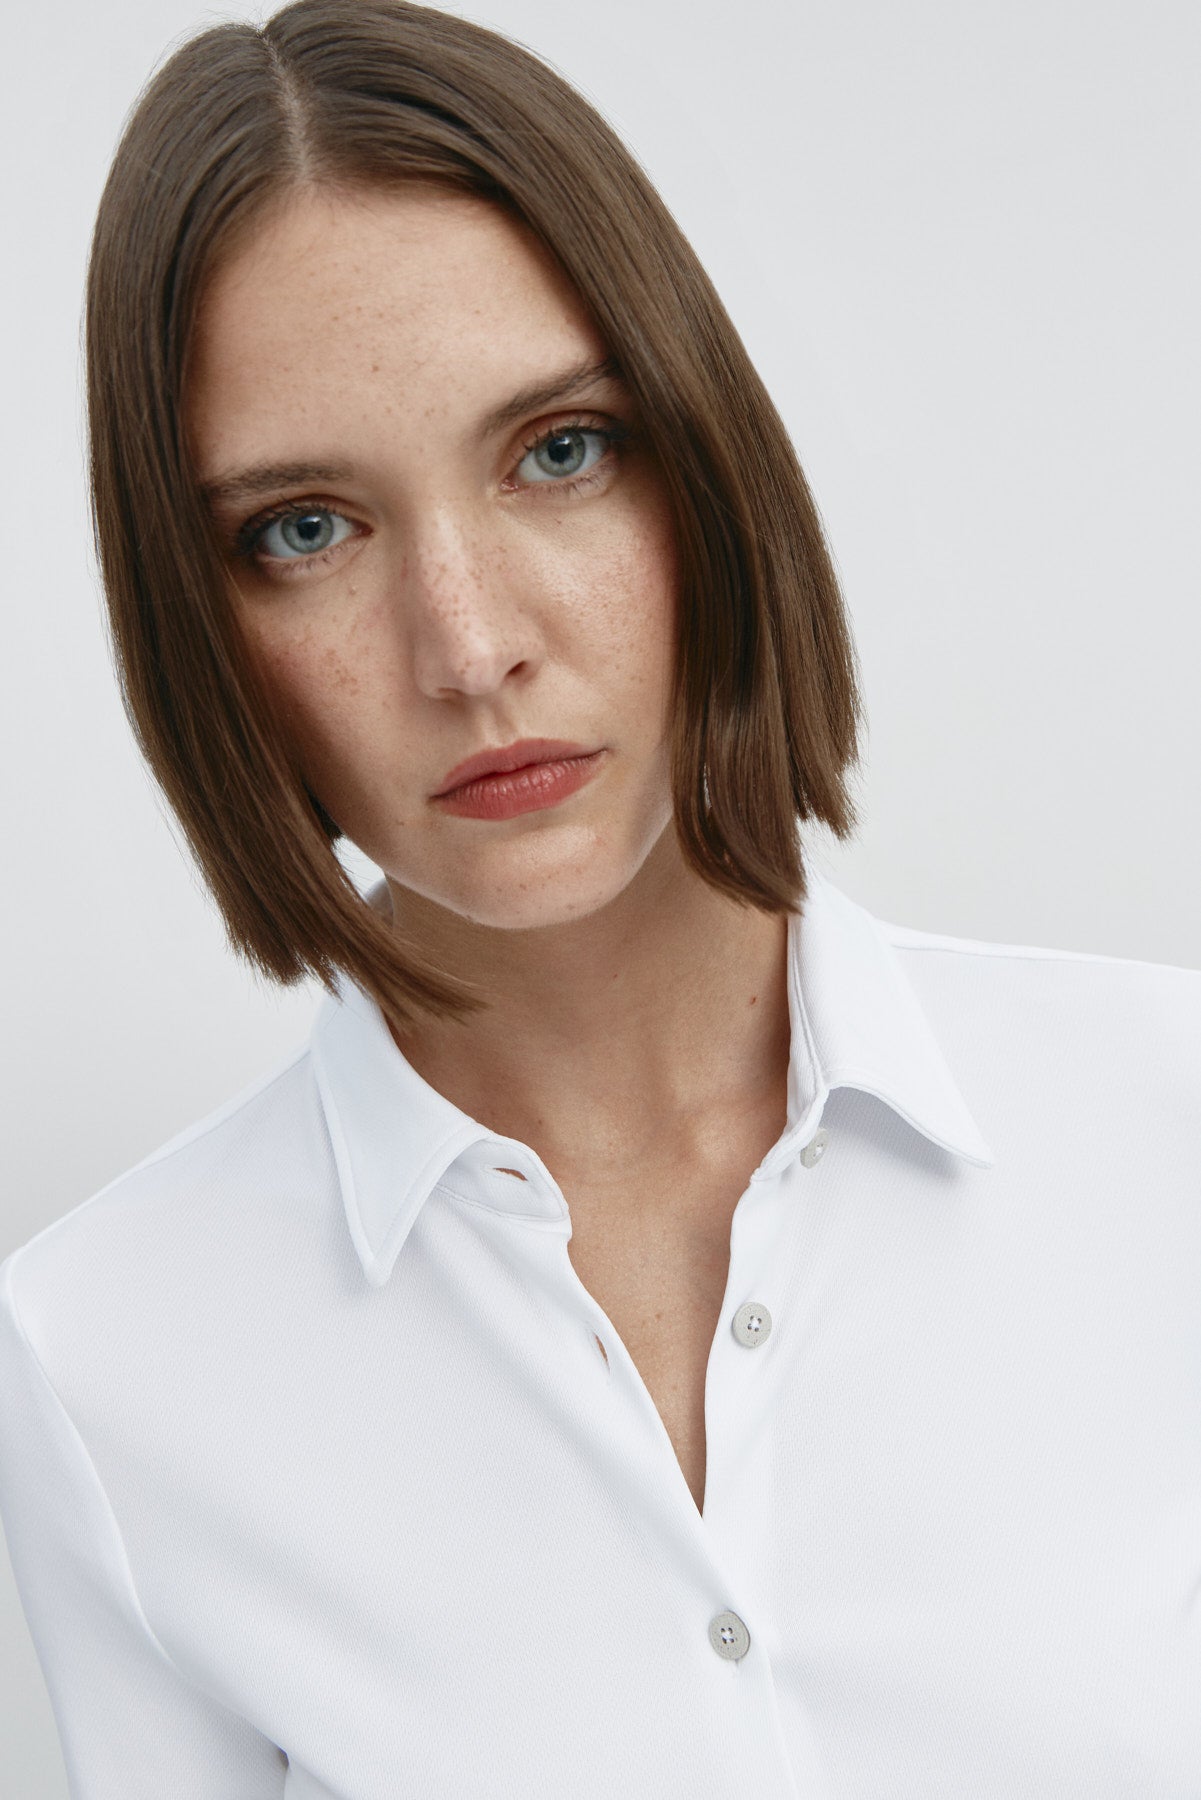  Camisa para mujer slim color blanco, básica y versátil. Foto retrato